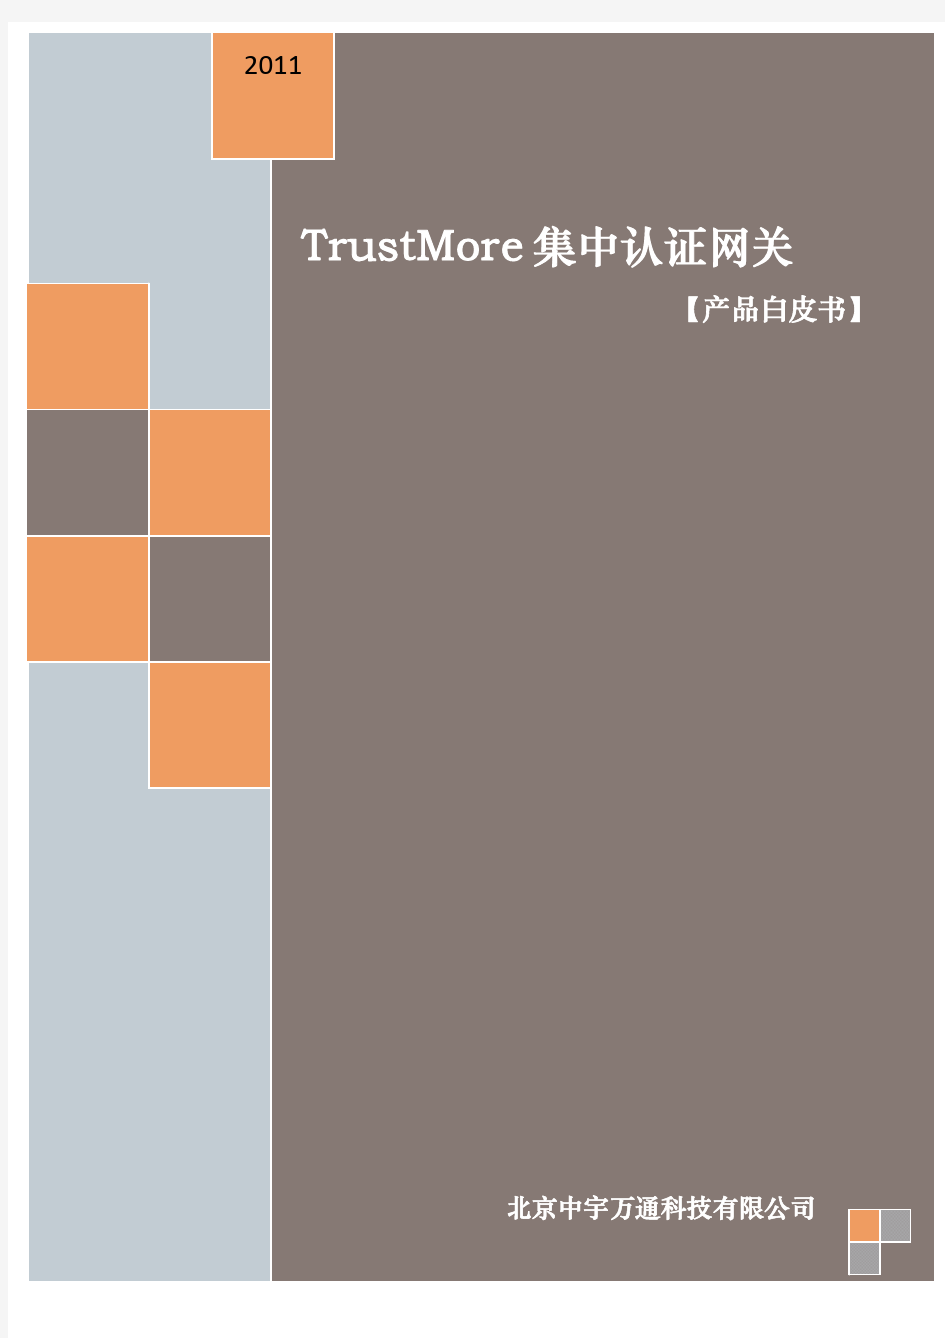 TrustMore集中认证网关.技术白皮书